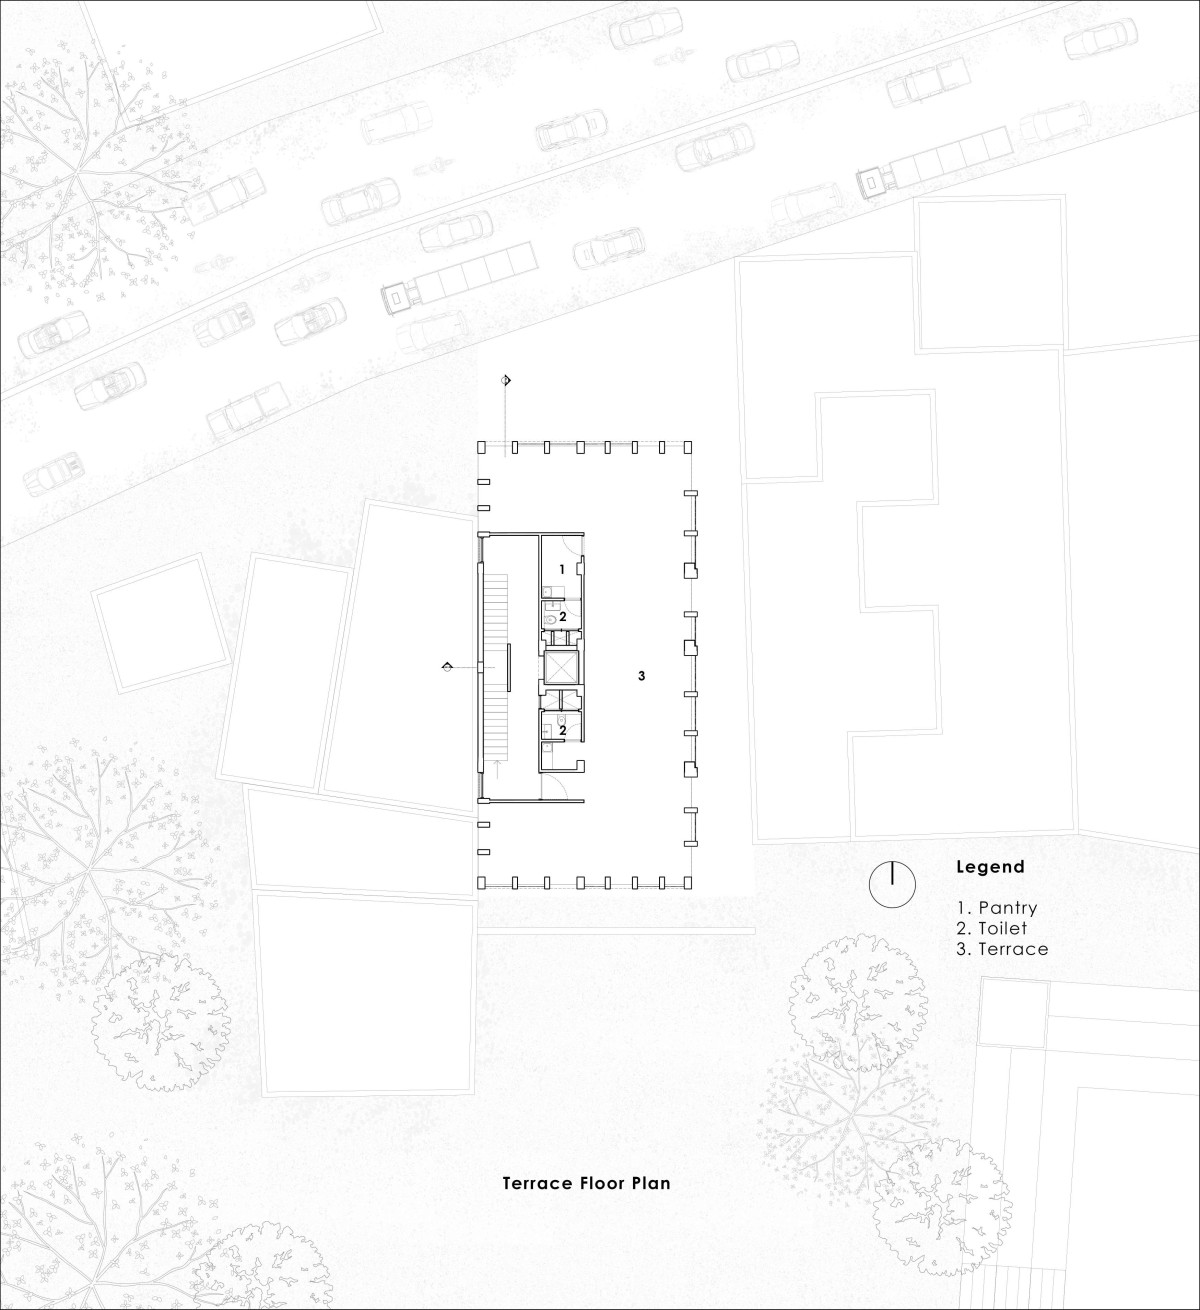 Terrace floor plan of Veiled Building by KUN Studio